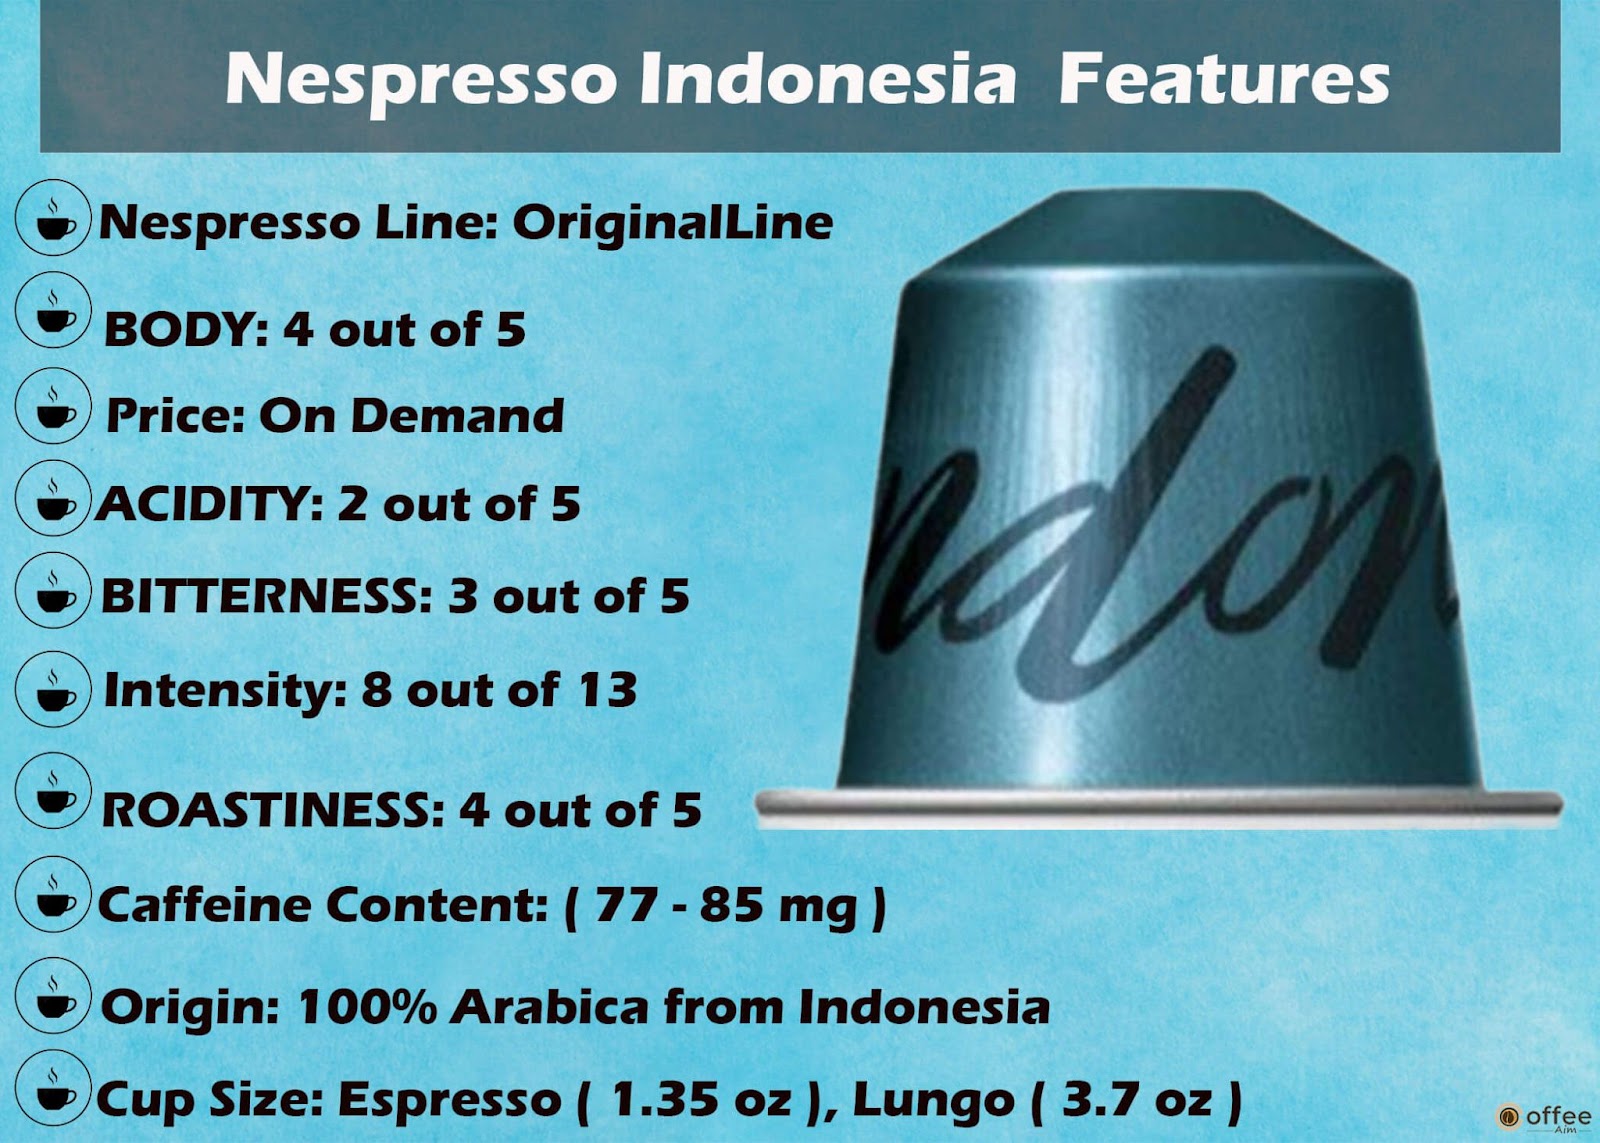 Features Chart of Nespresso Indonesia Original Line Capsule.